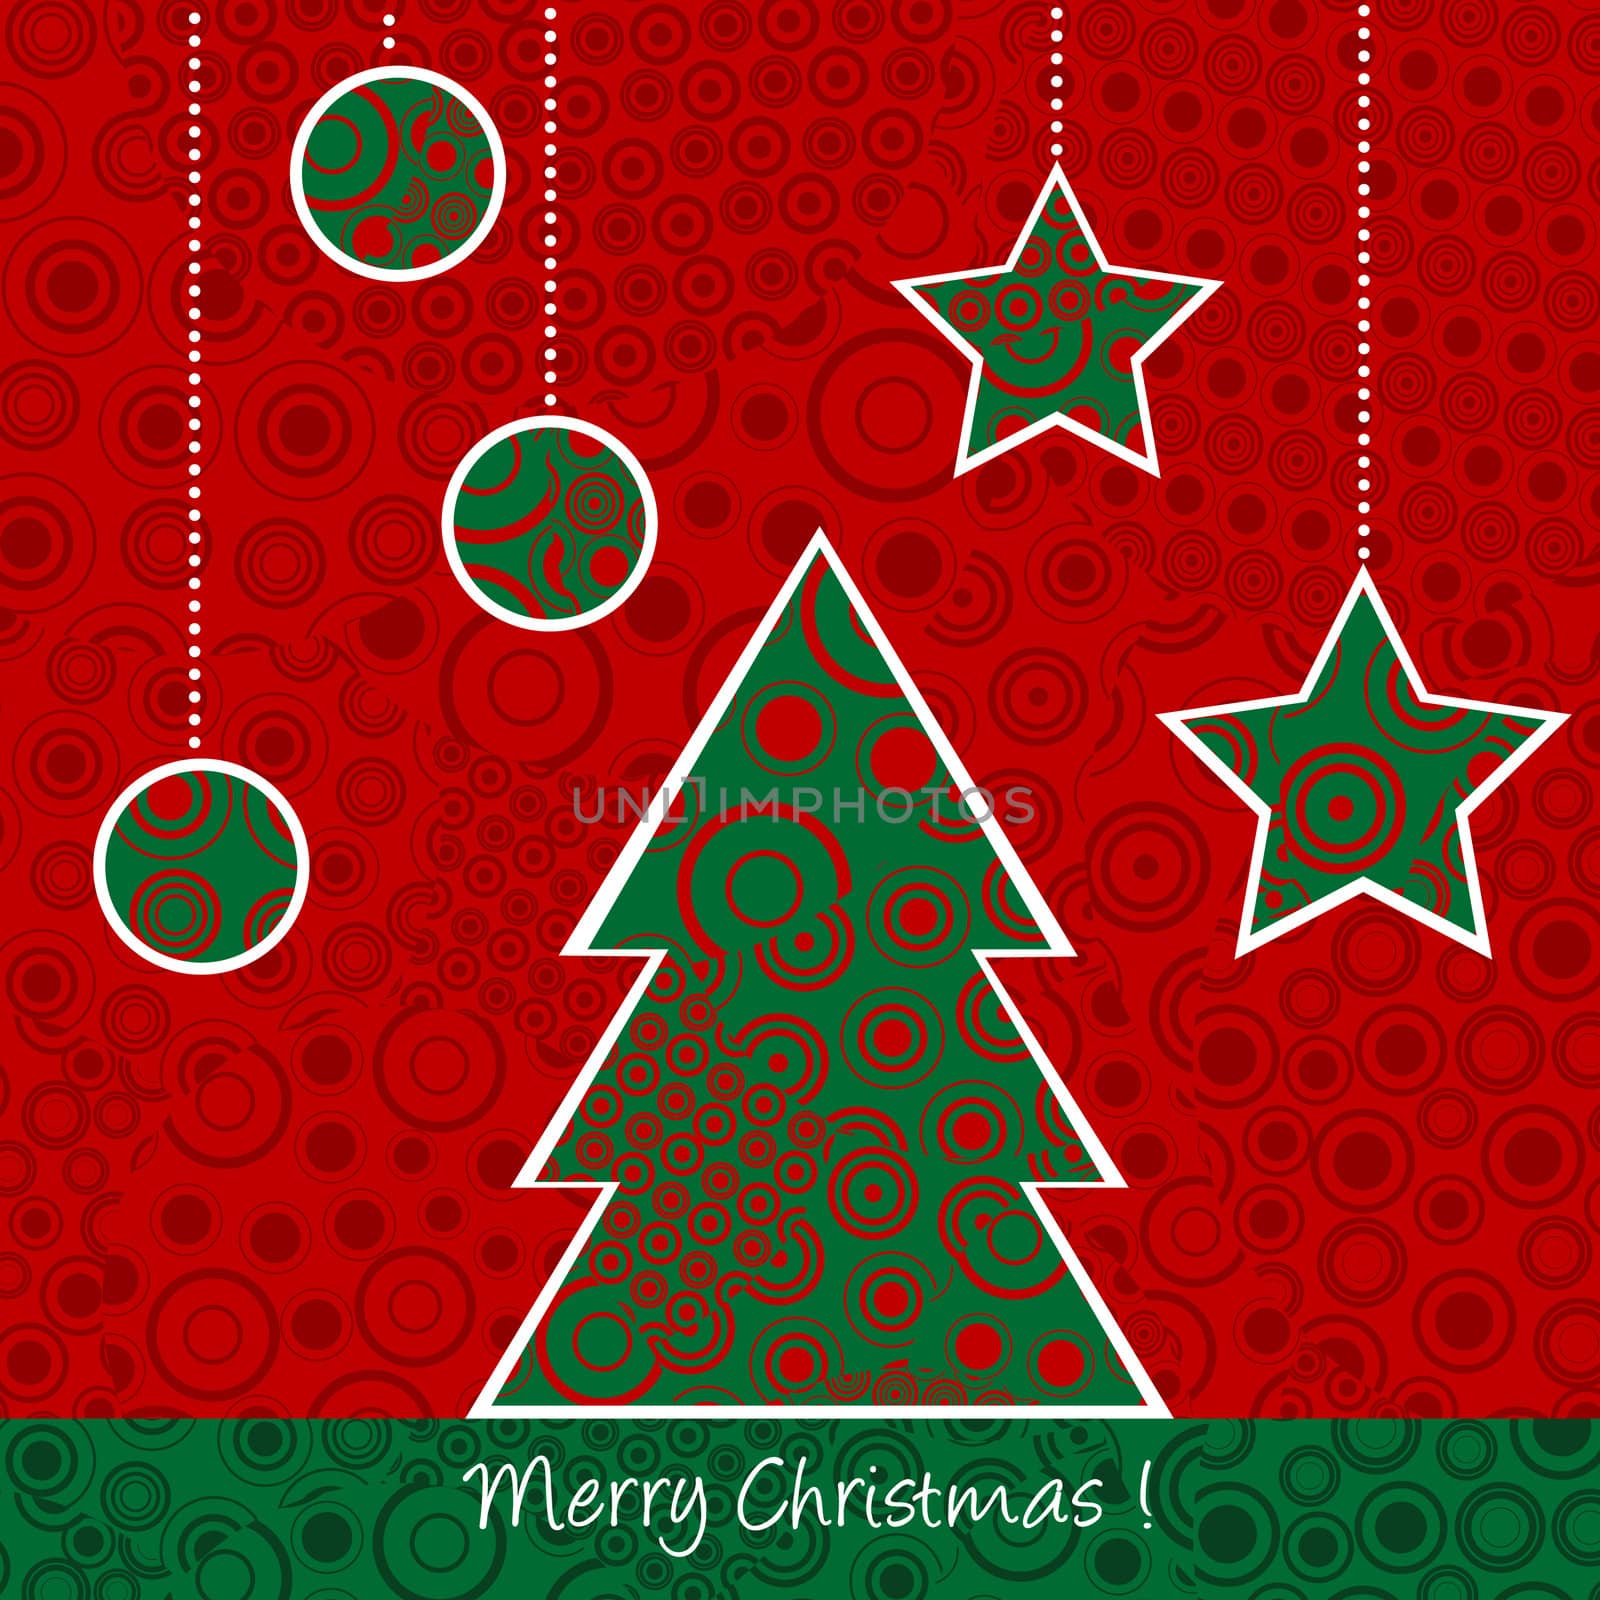 Christmas card with Christmas tree and balls by hibrida13